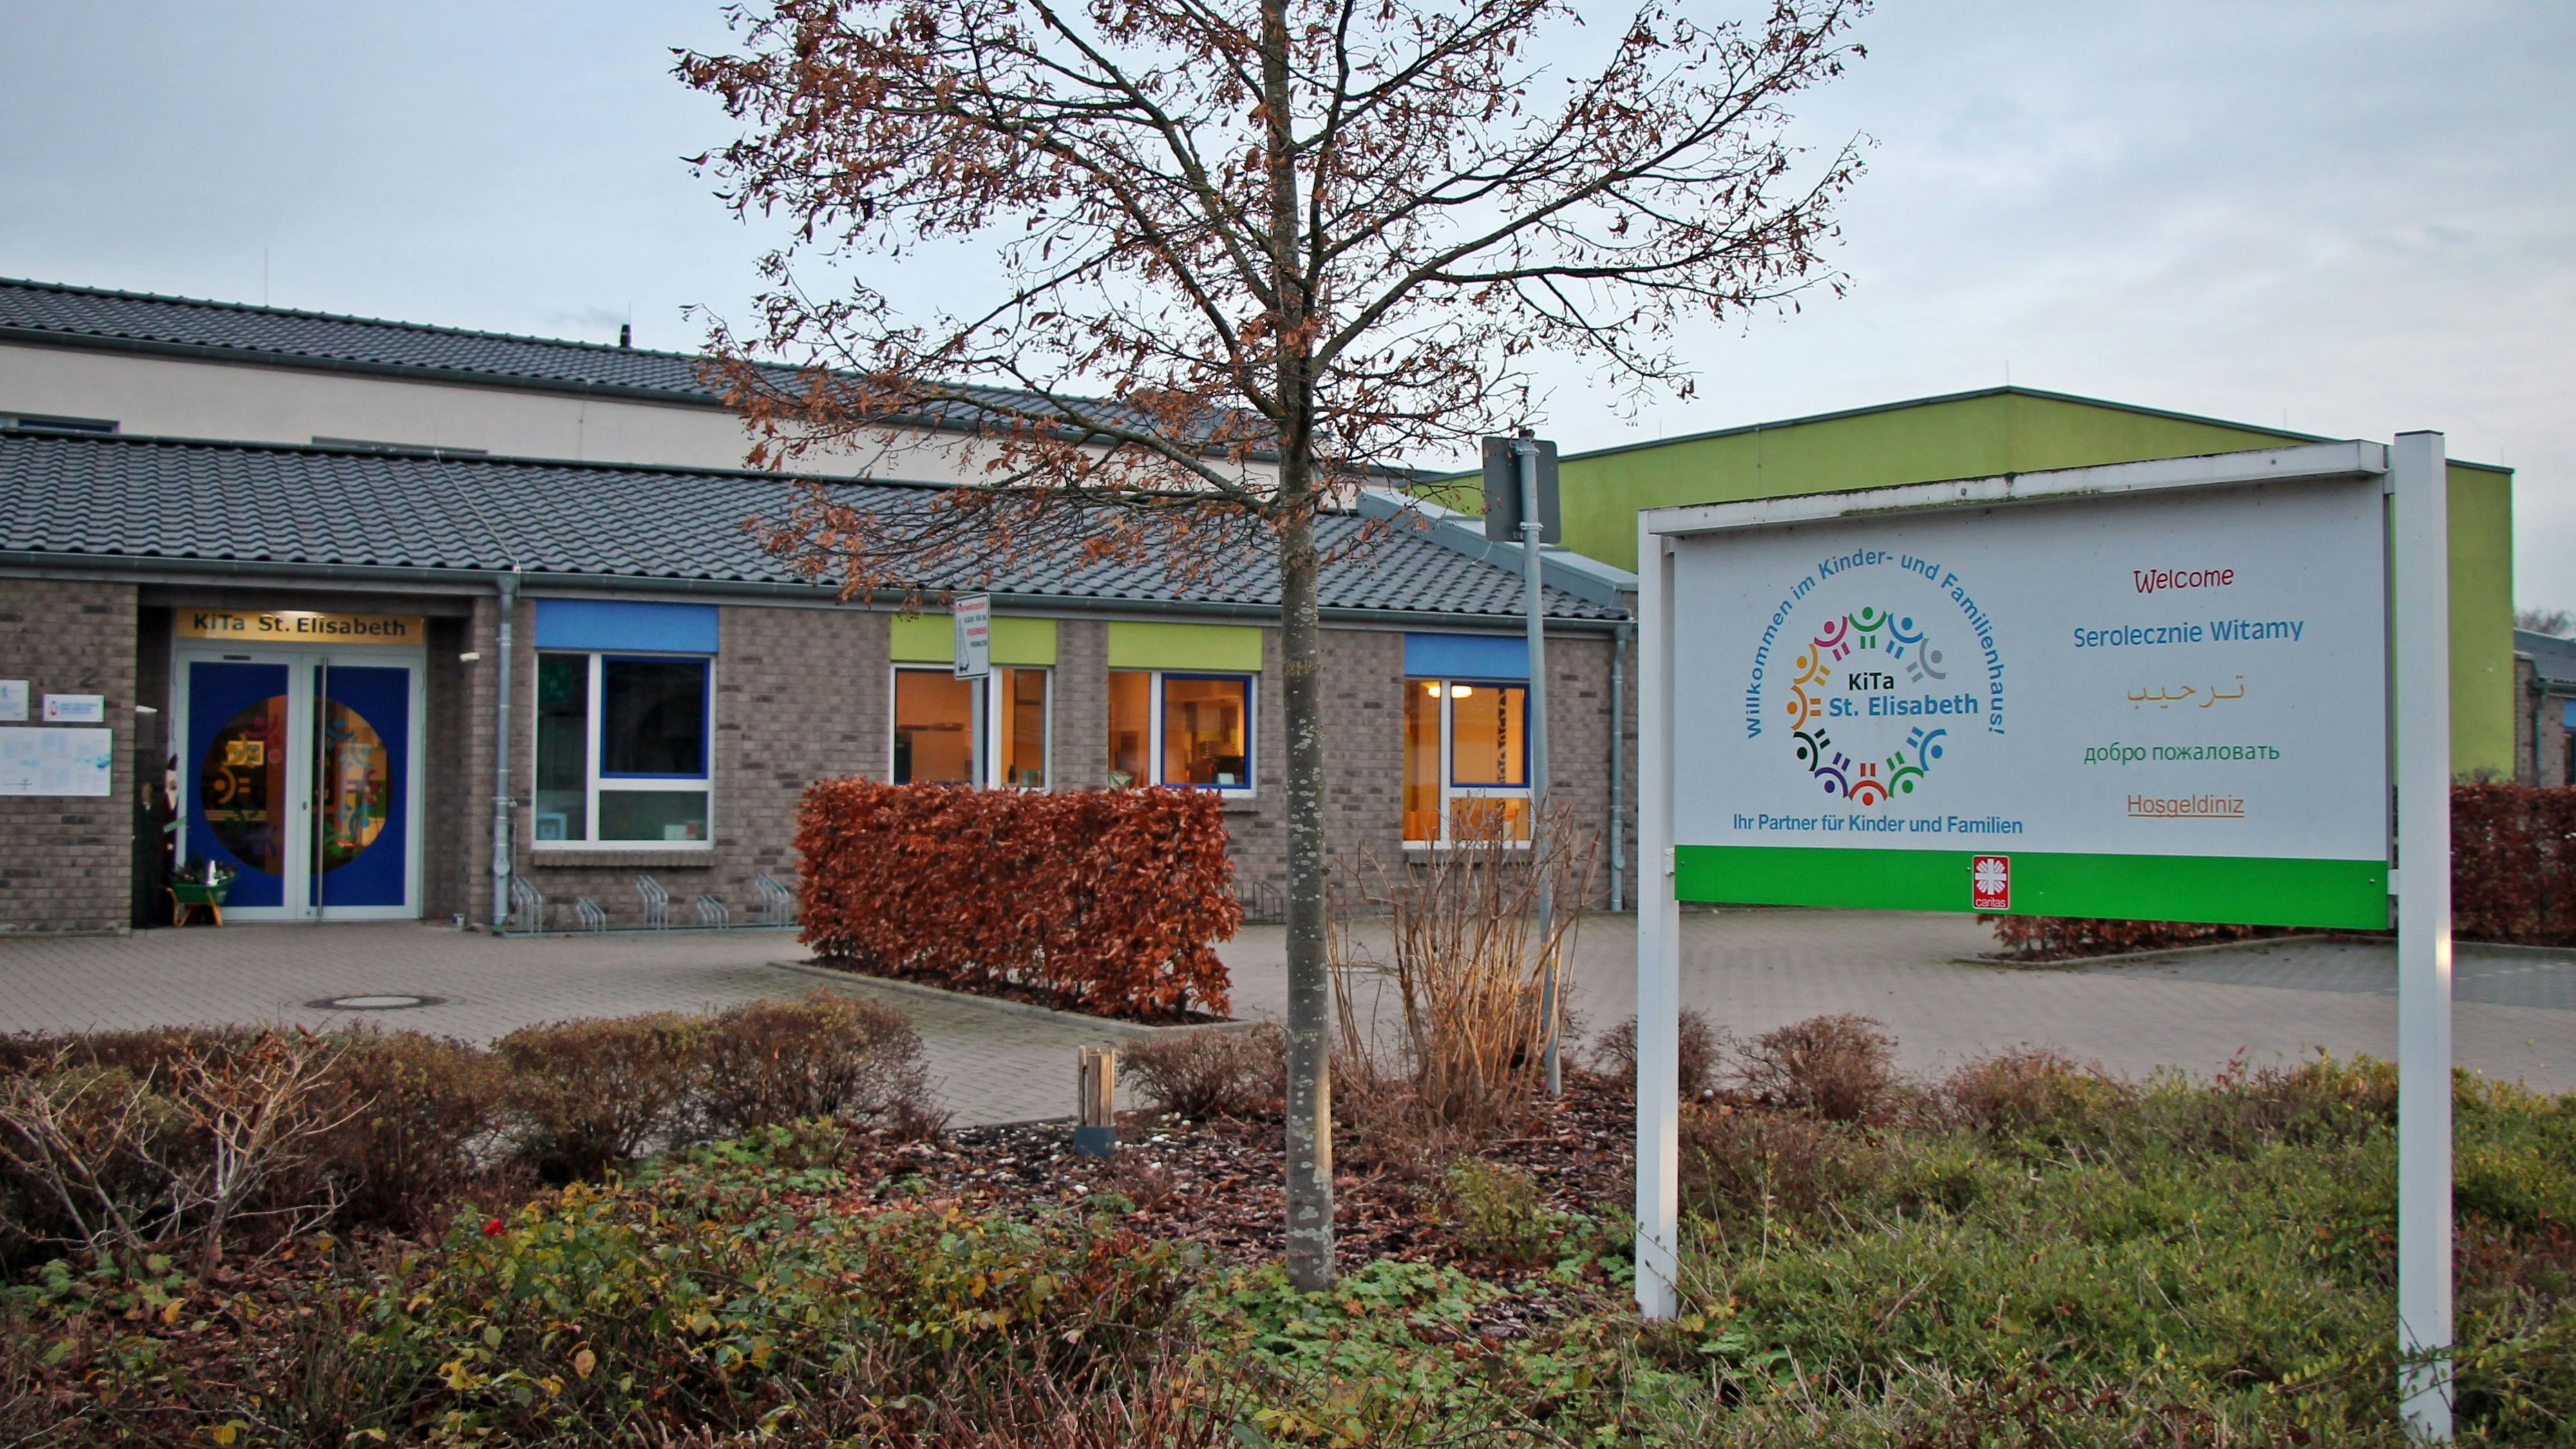 Mehr Platz ab Ende 2022: Die Kindertagesstätte St. Elisabeth in Vörden erhält Räume für eine weitere Regelgruppe. Die Fertigstellung ist in etwa zwölf Monaten geplant. Foto: Oevermann